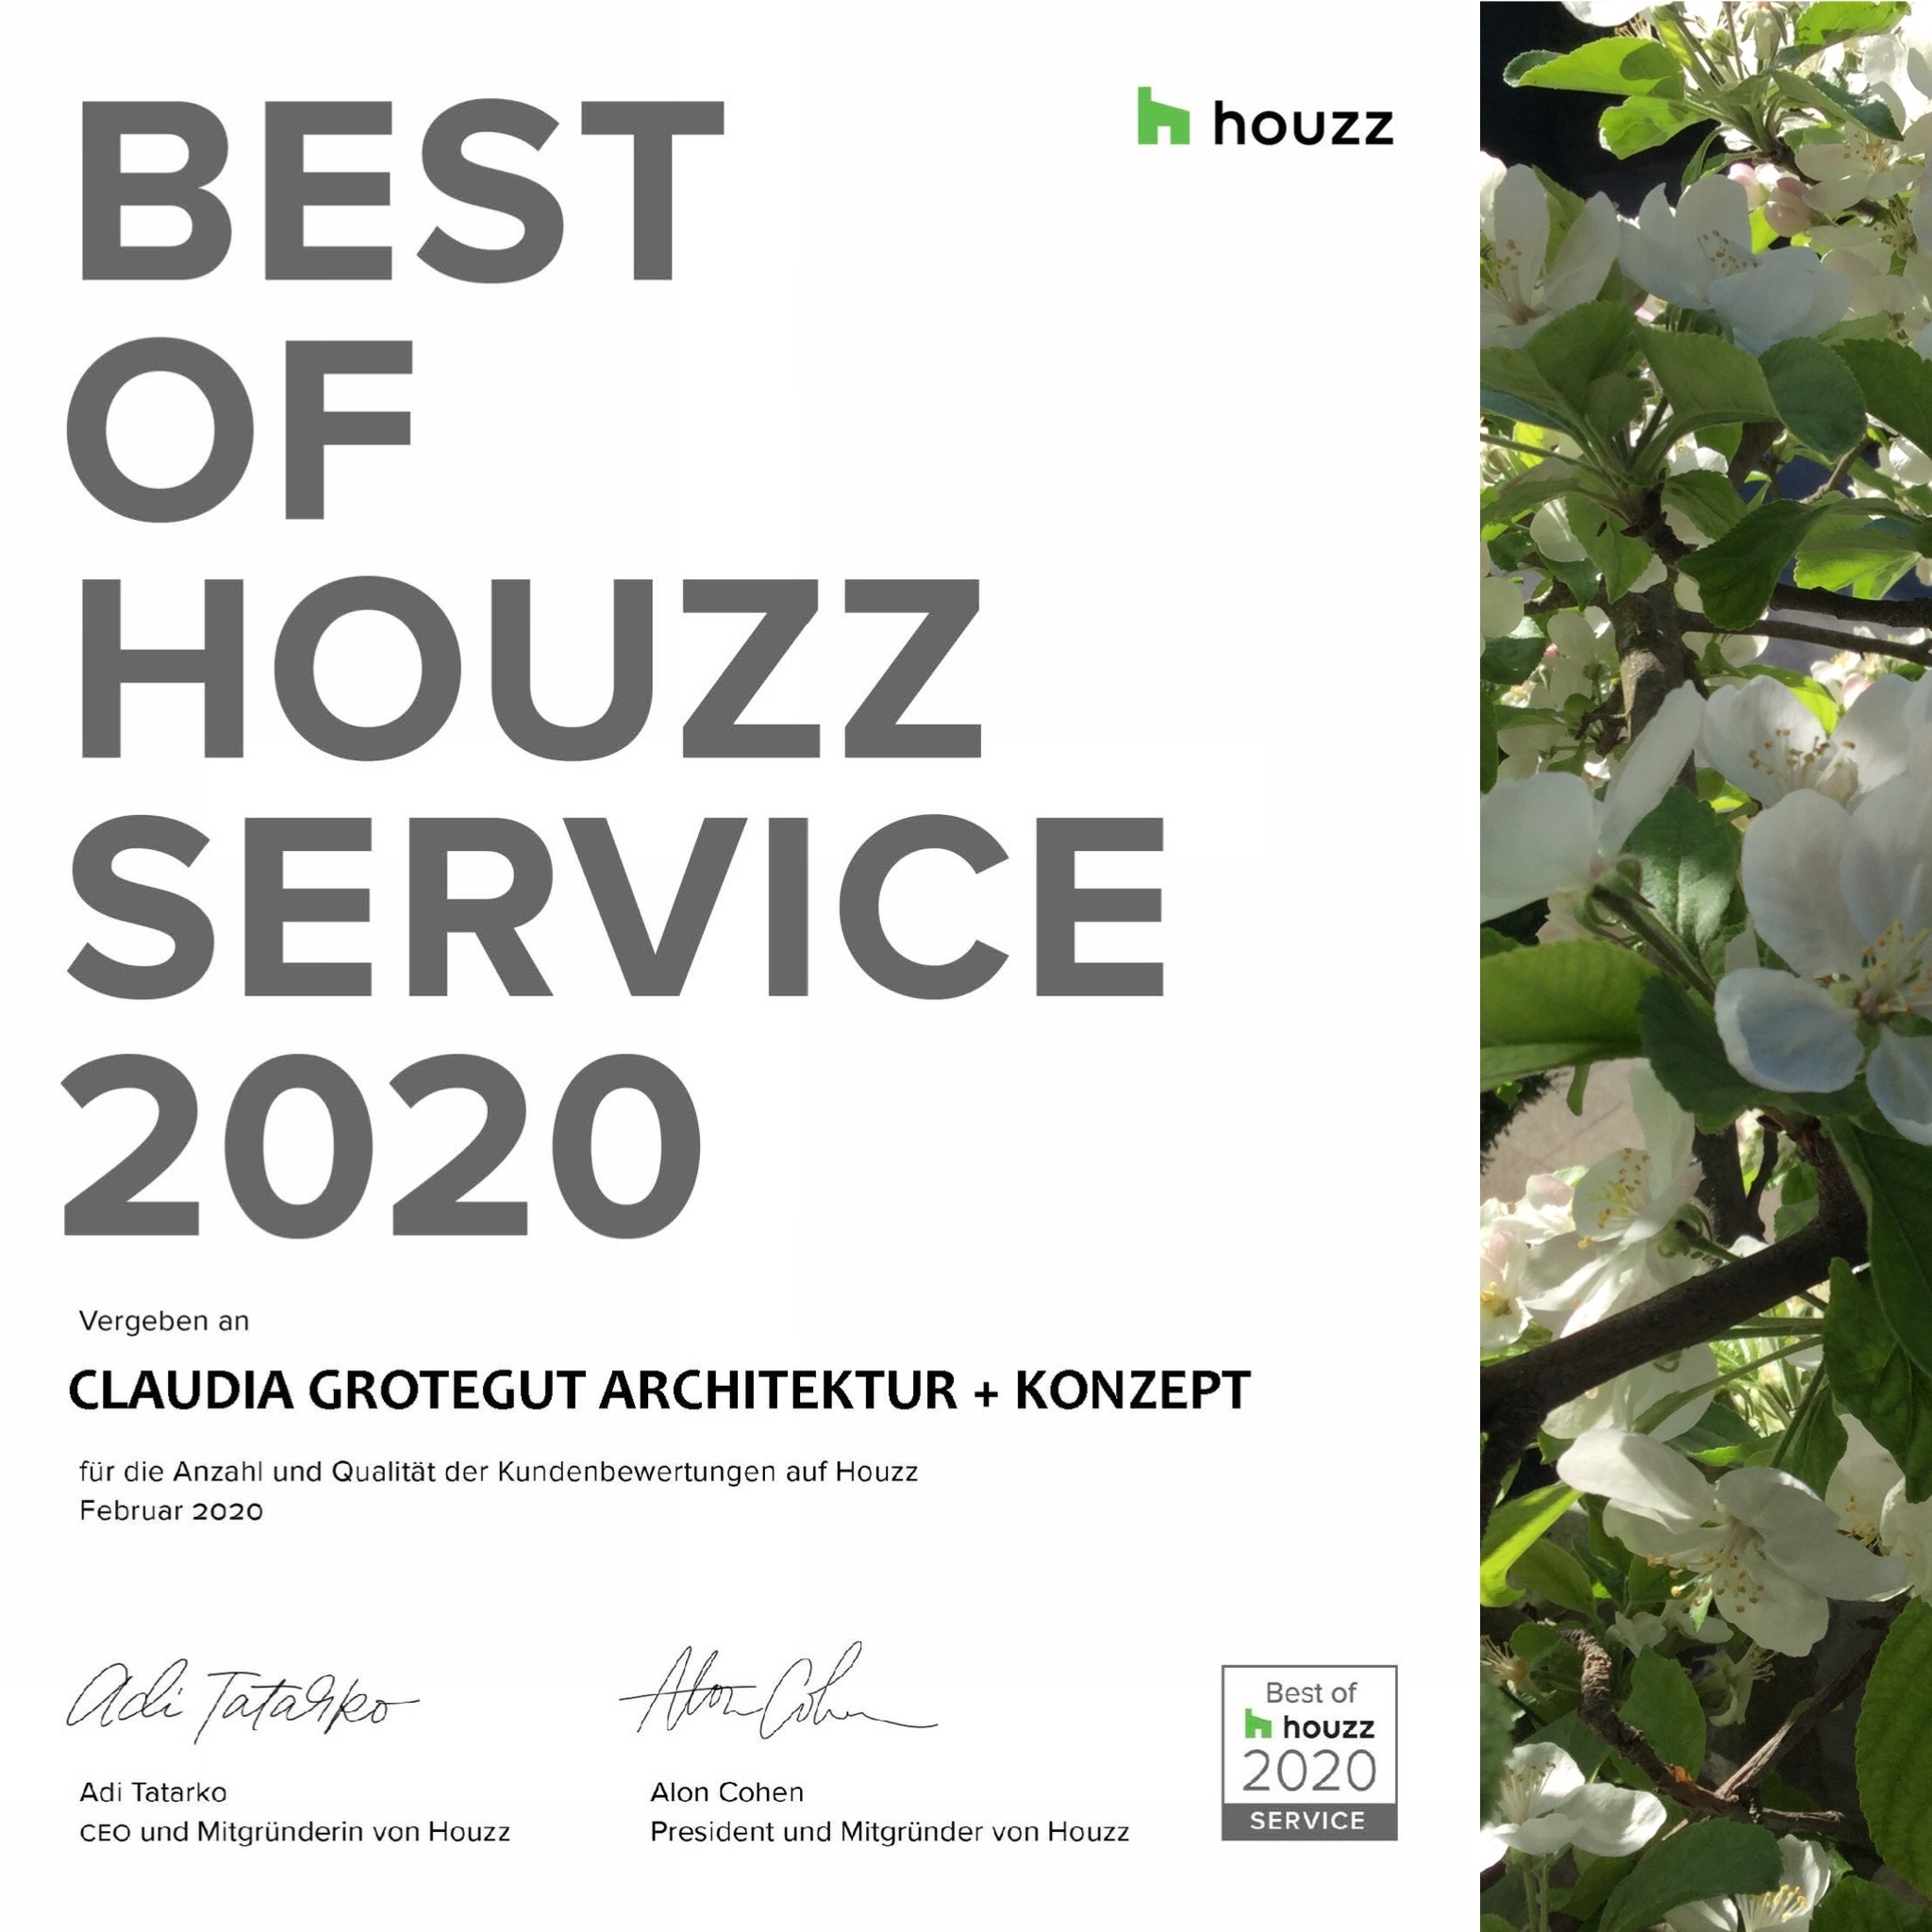 „Best of Houzz”-Award für Claudia Grotegut ARCHITEKTUR + KONZEPT in Essen